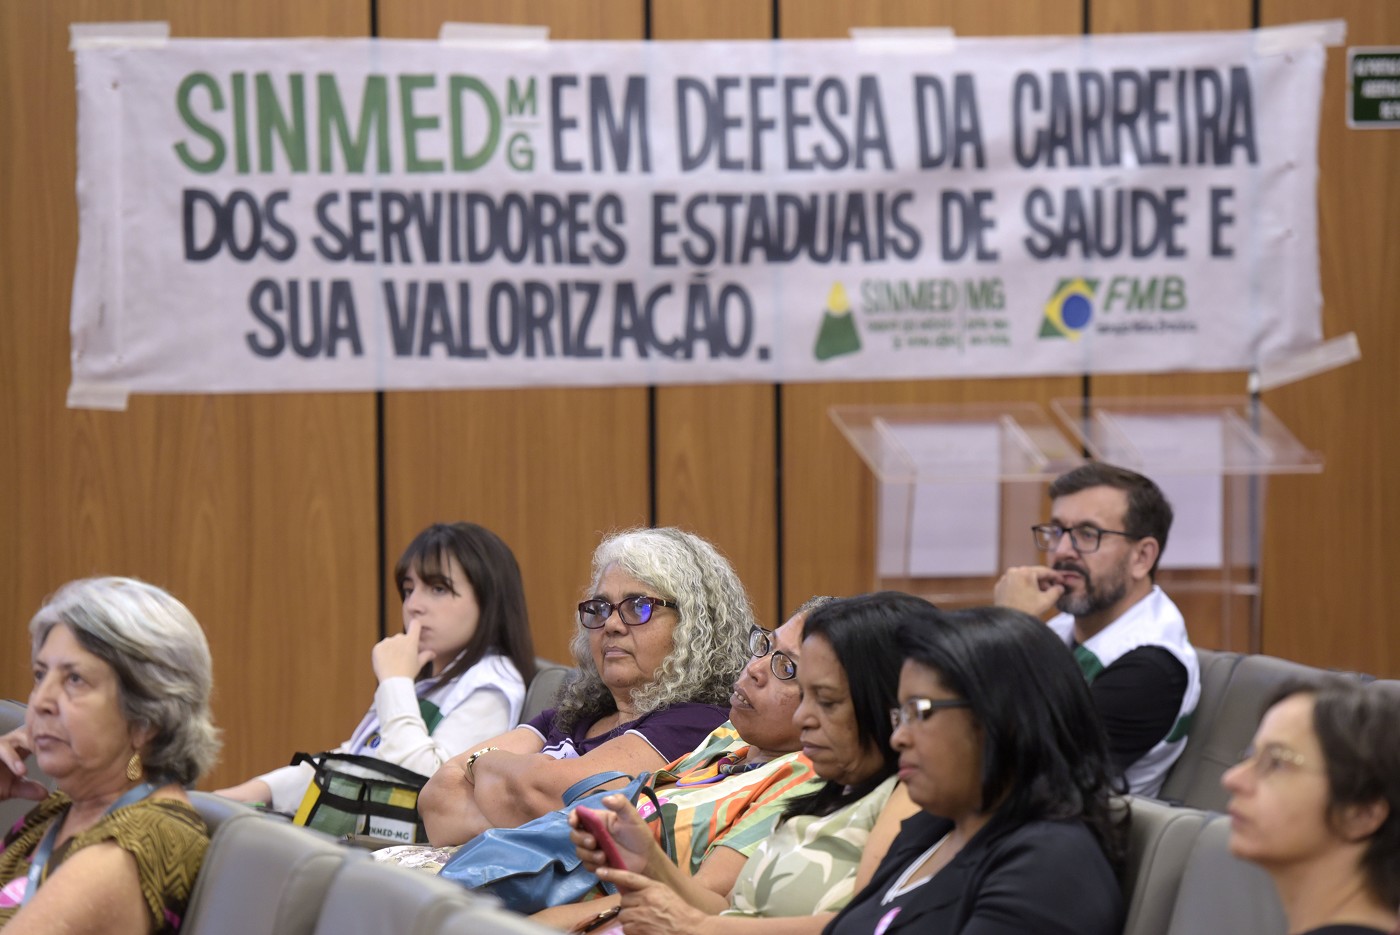 Comissão de Administração Pública - debate sobre a carreira dos servidores estaduais de saúde